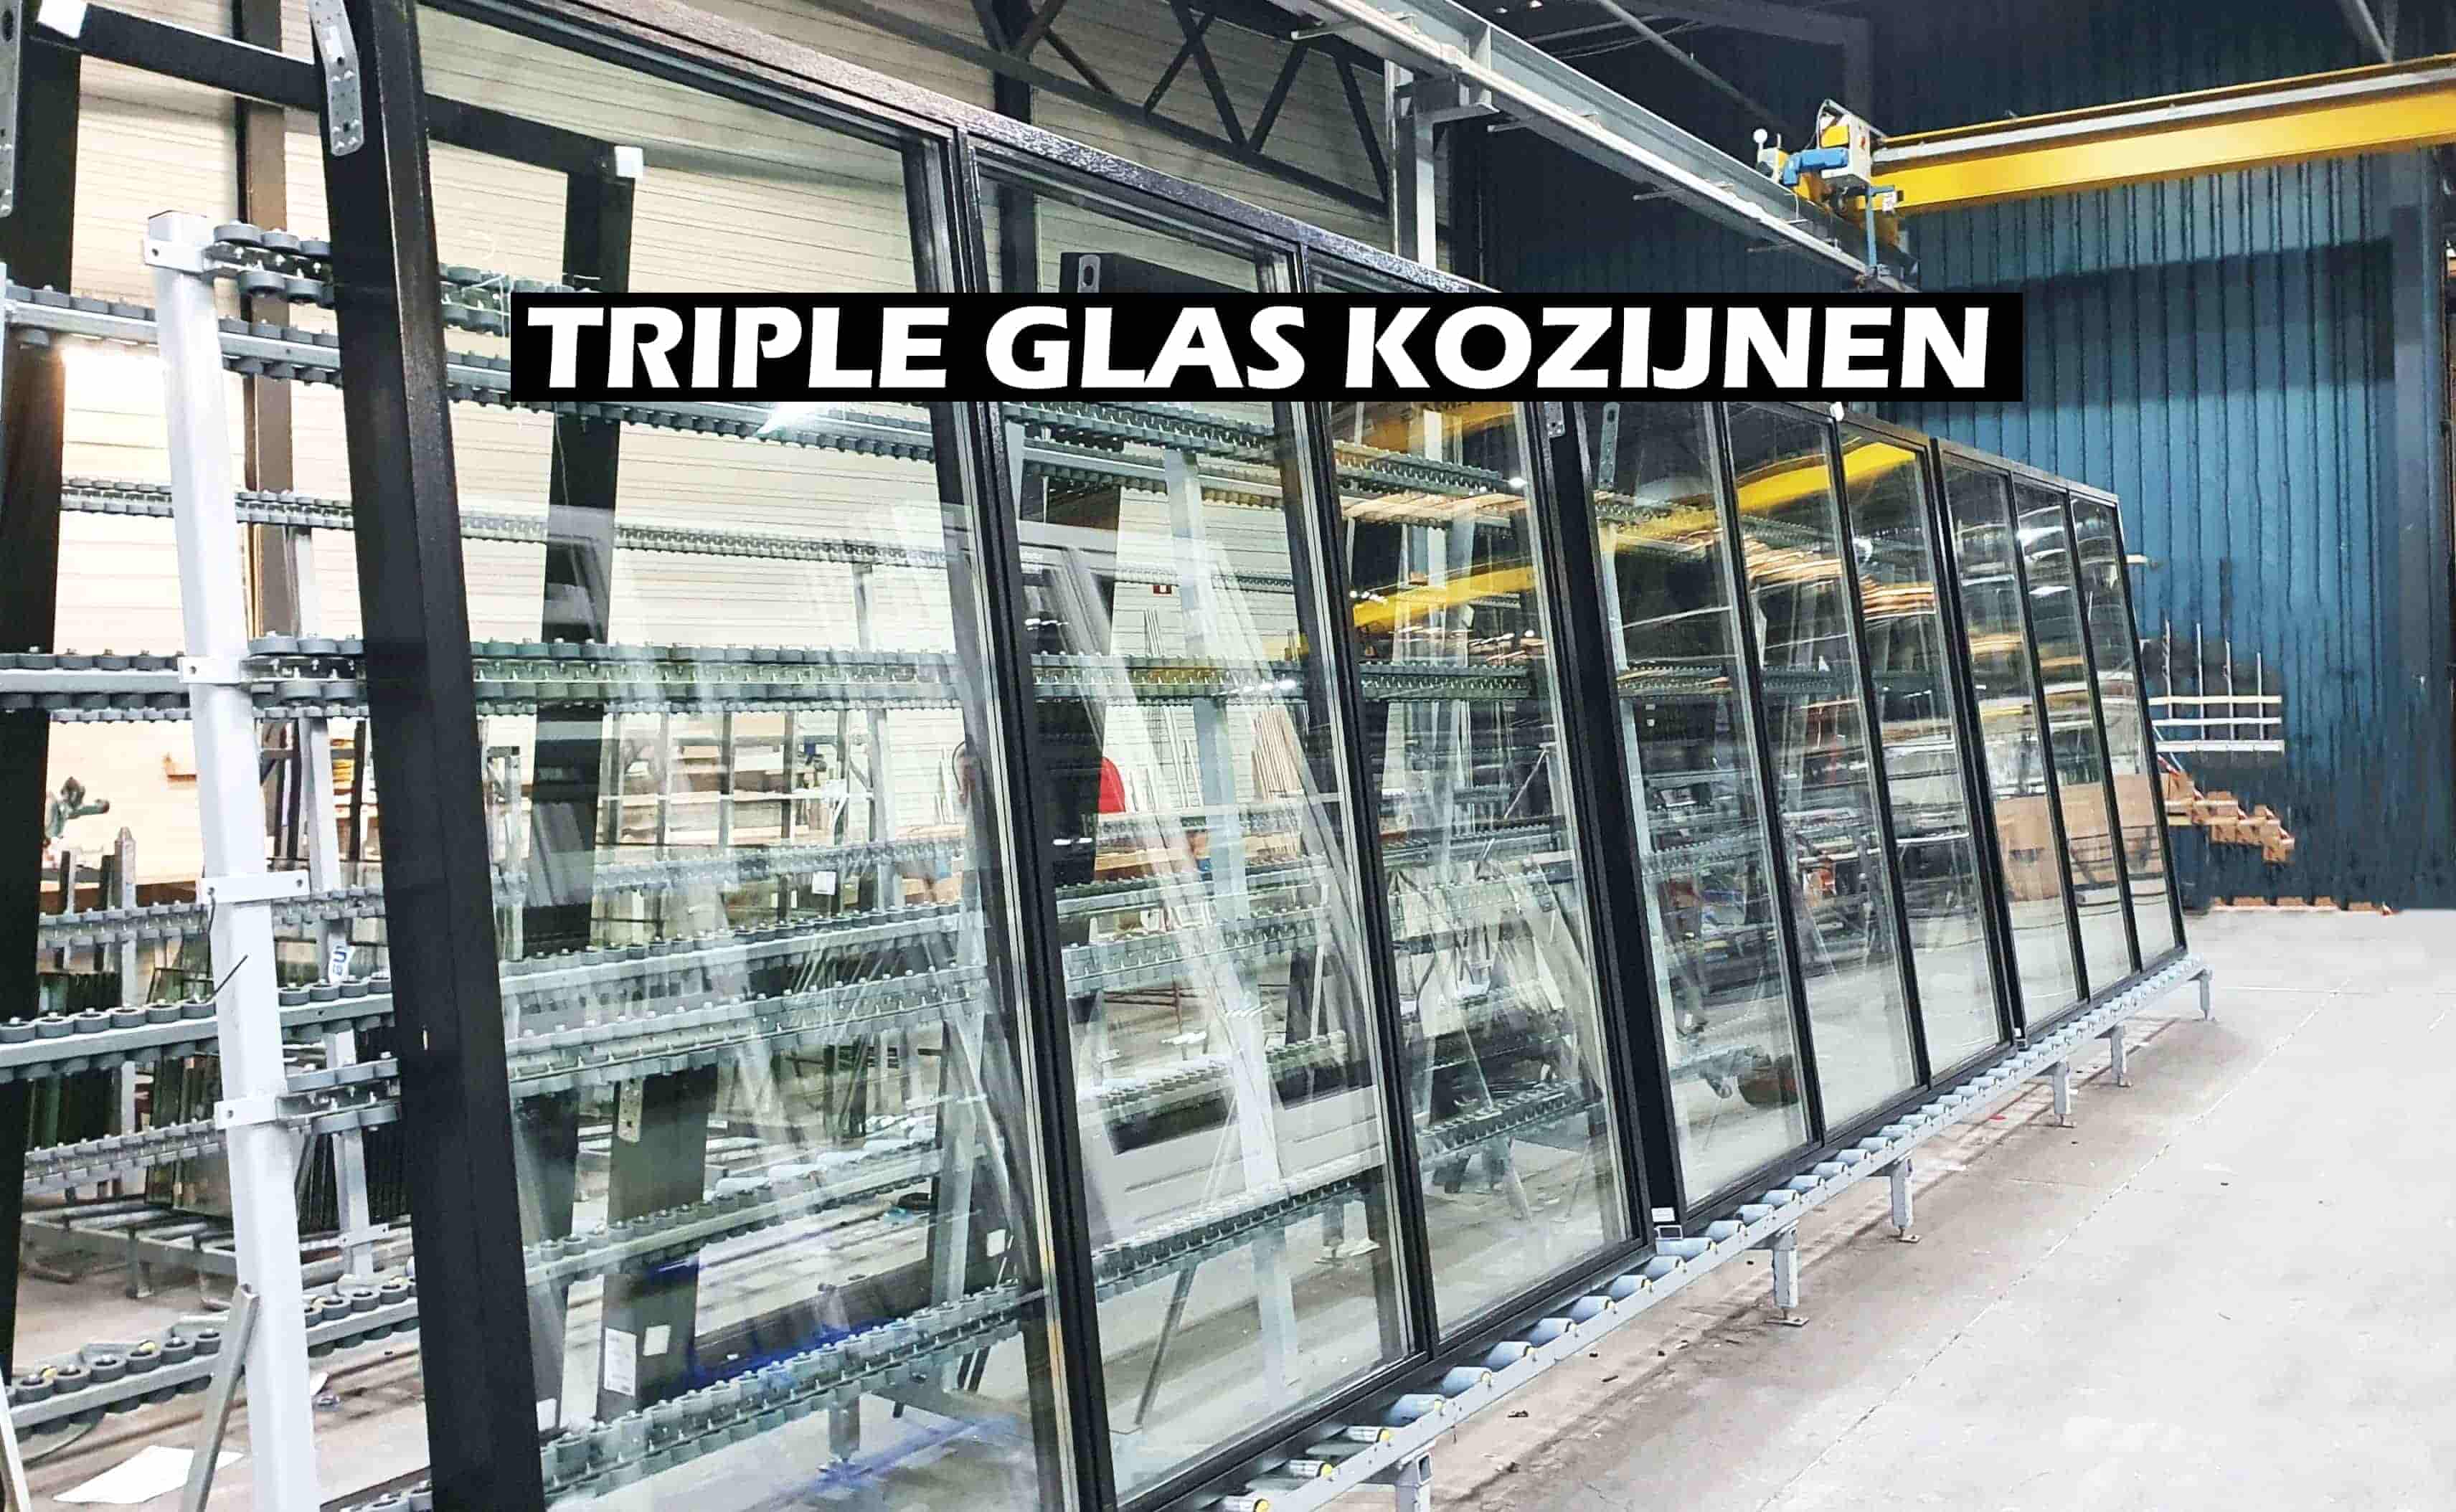 rivaal Afgeschaft Elektronisch NEW! Nu online ook mogelijk, alle kozijnen met triple glas, direct prijs!